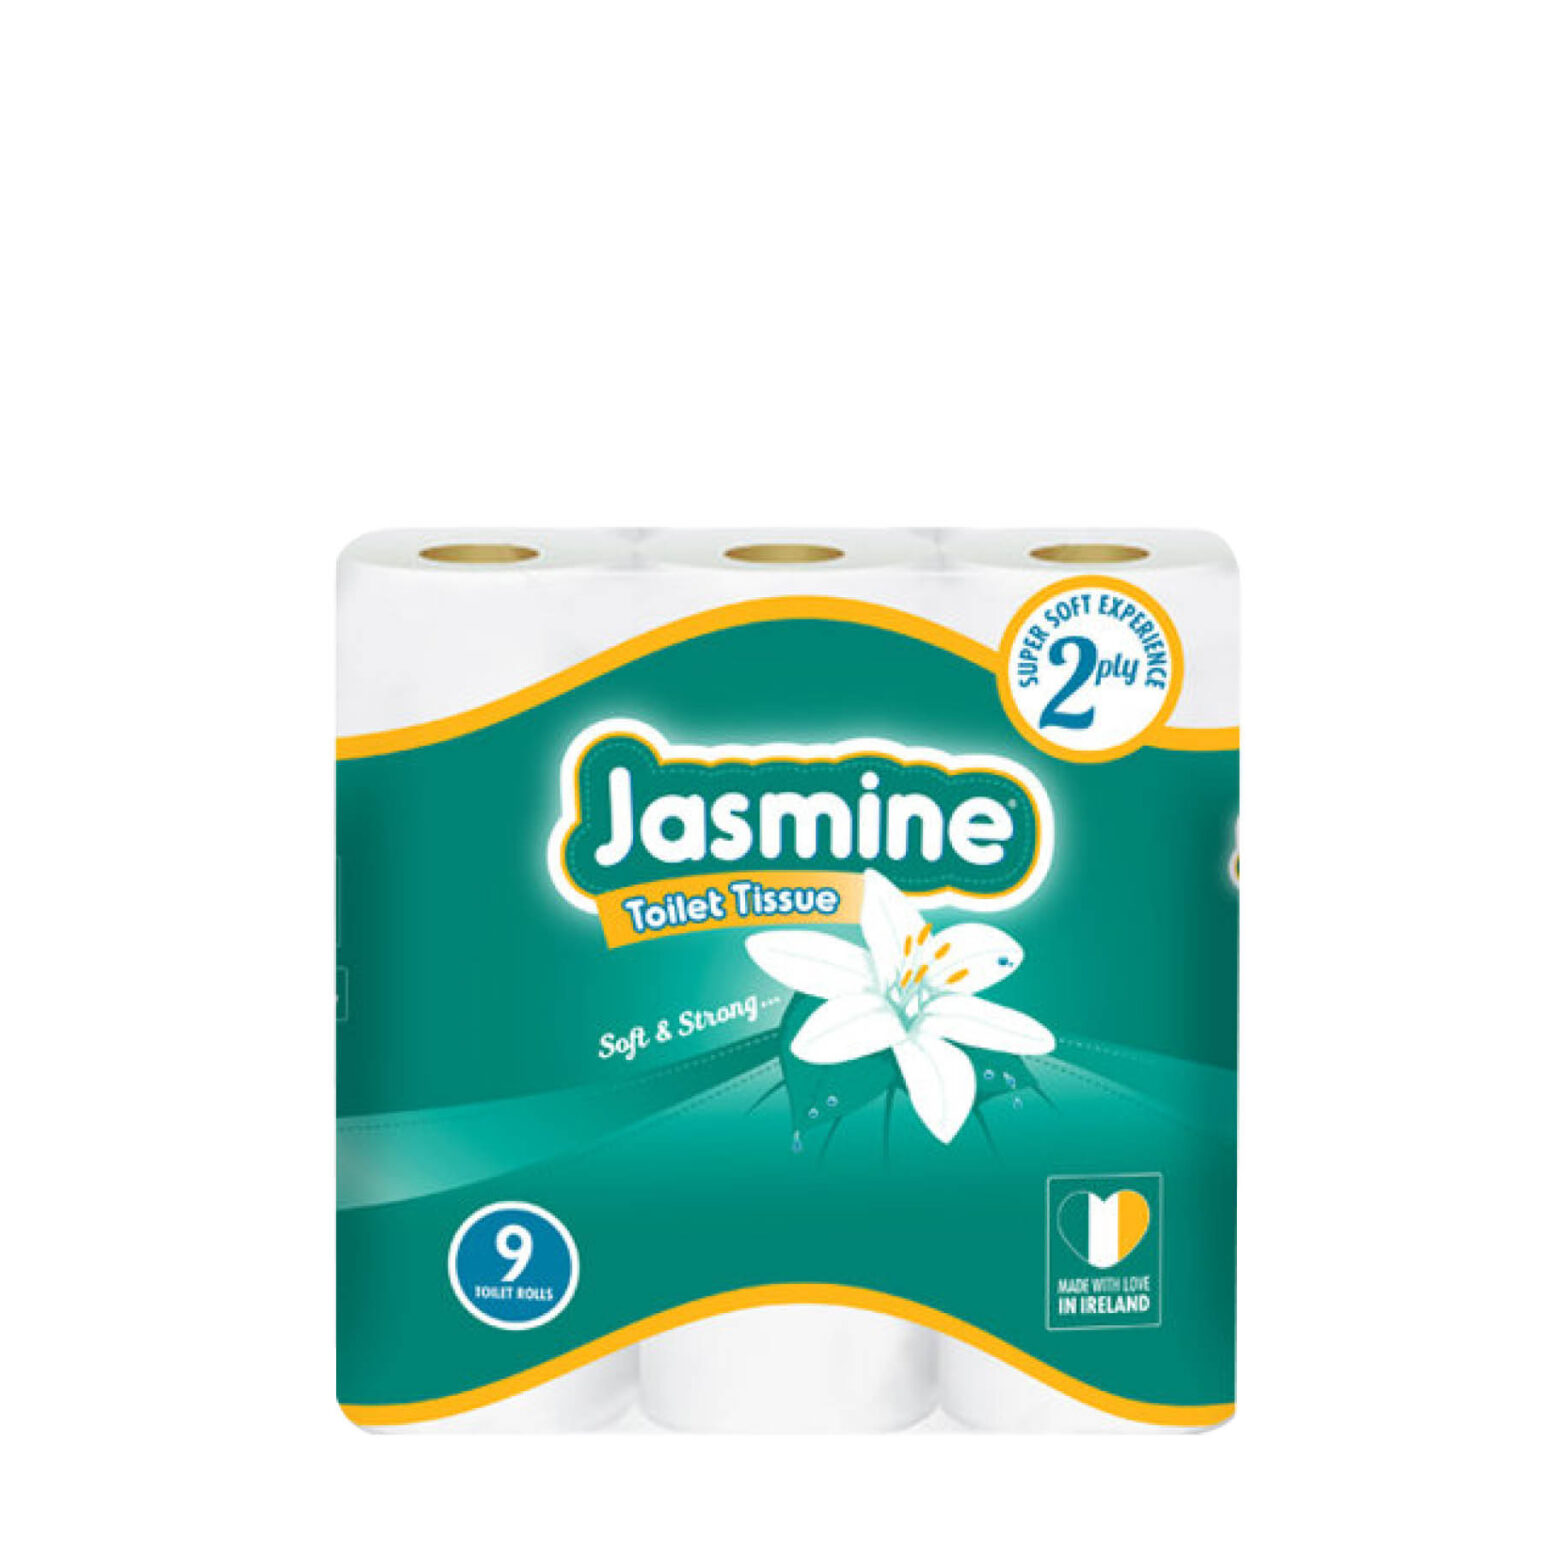 Jasmine Toilet Tissue